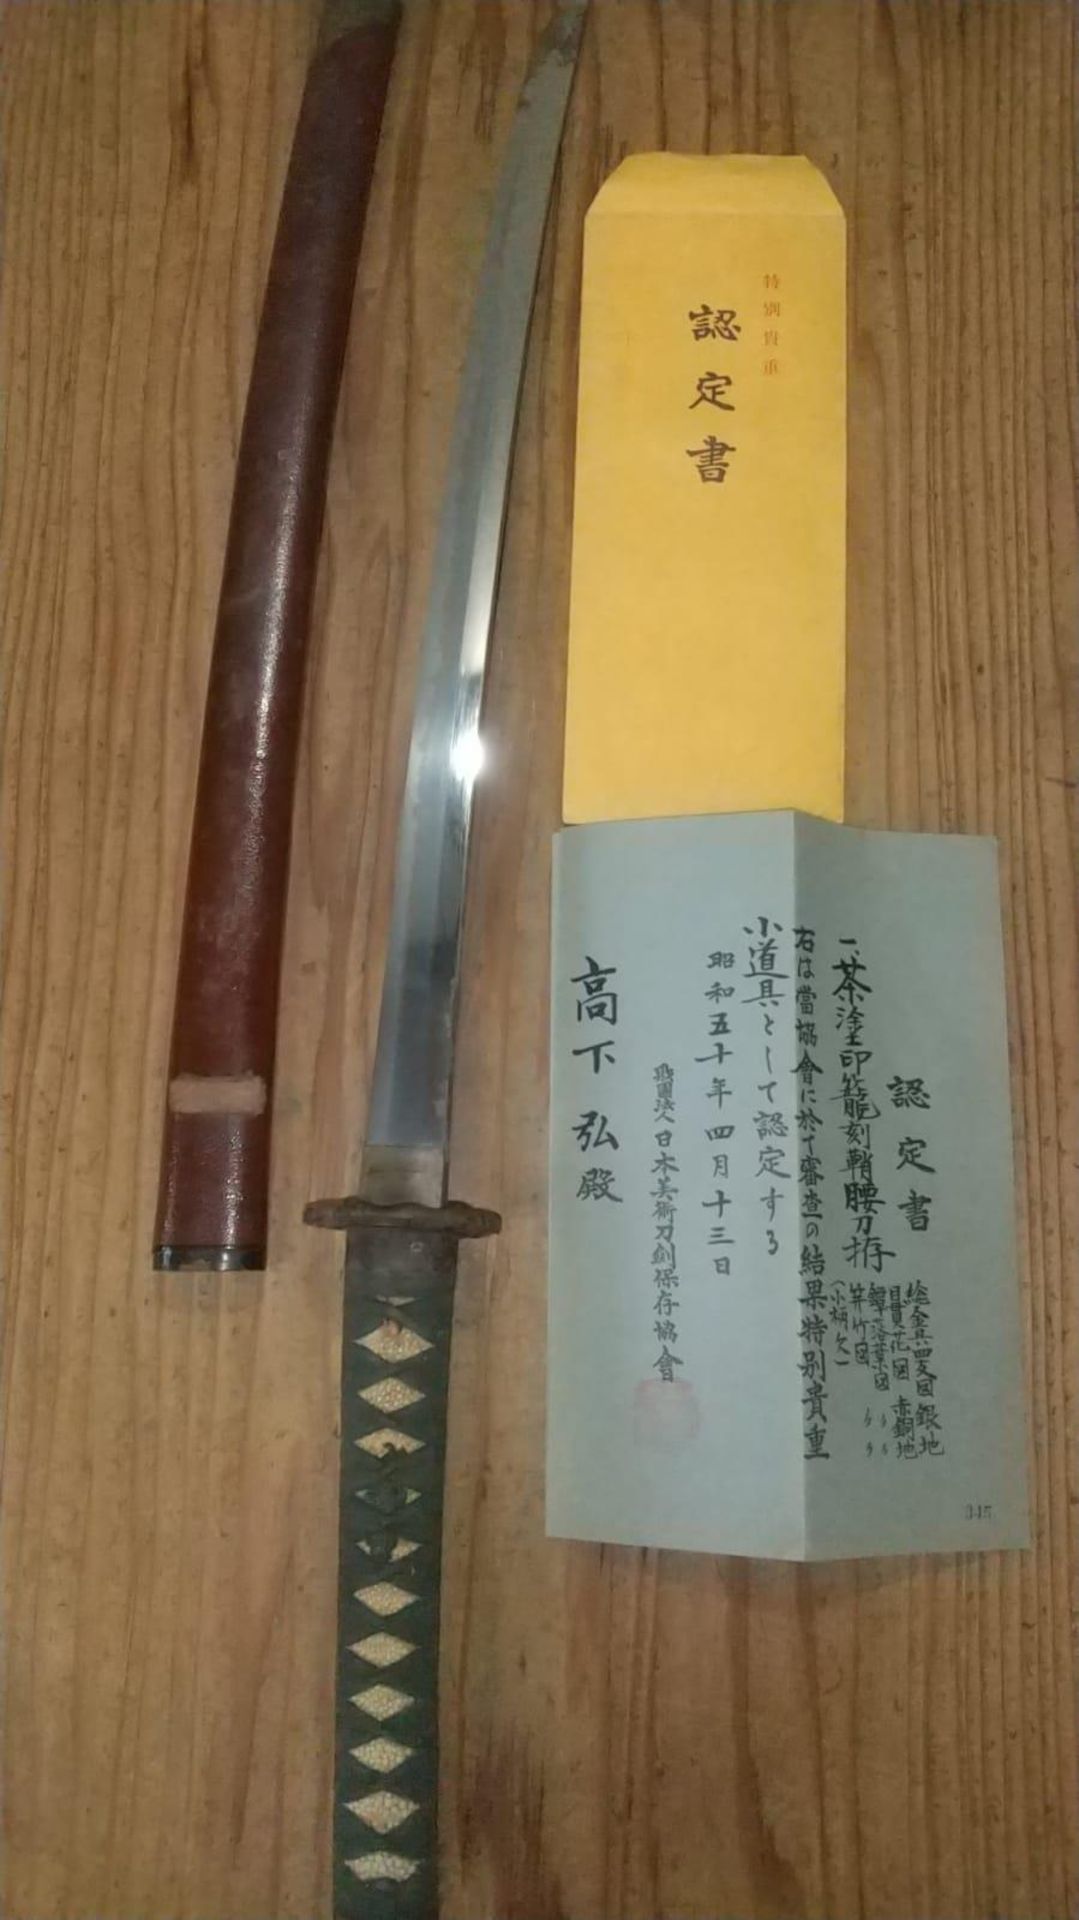 Rare Antique 1300's Japanese TAIMA School Samurai Sword. Very Rare Kamakura period 1300's TAIMA